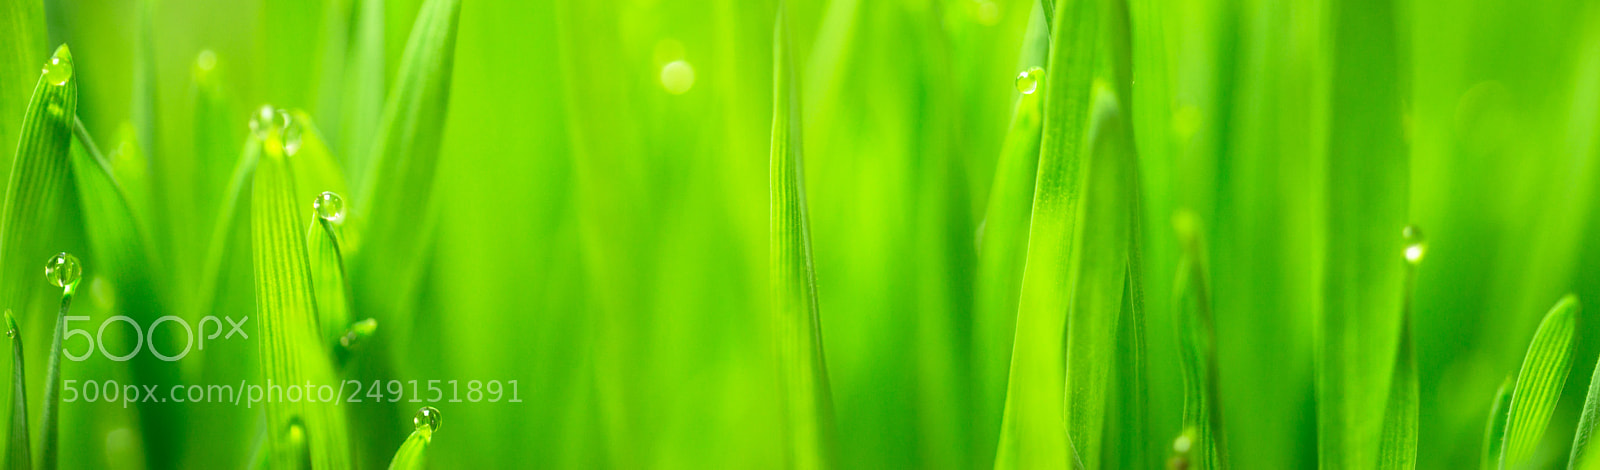 Sony a99 II sample photo. Microgreens growing panoramic dew photography